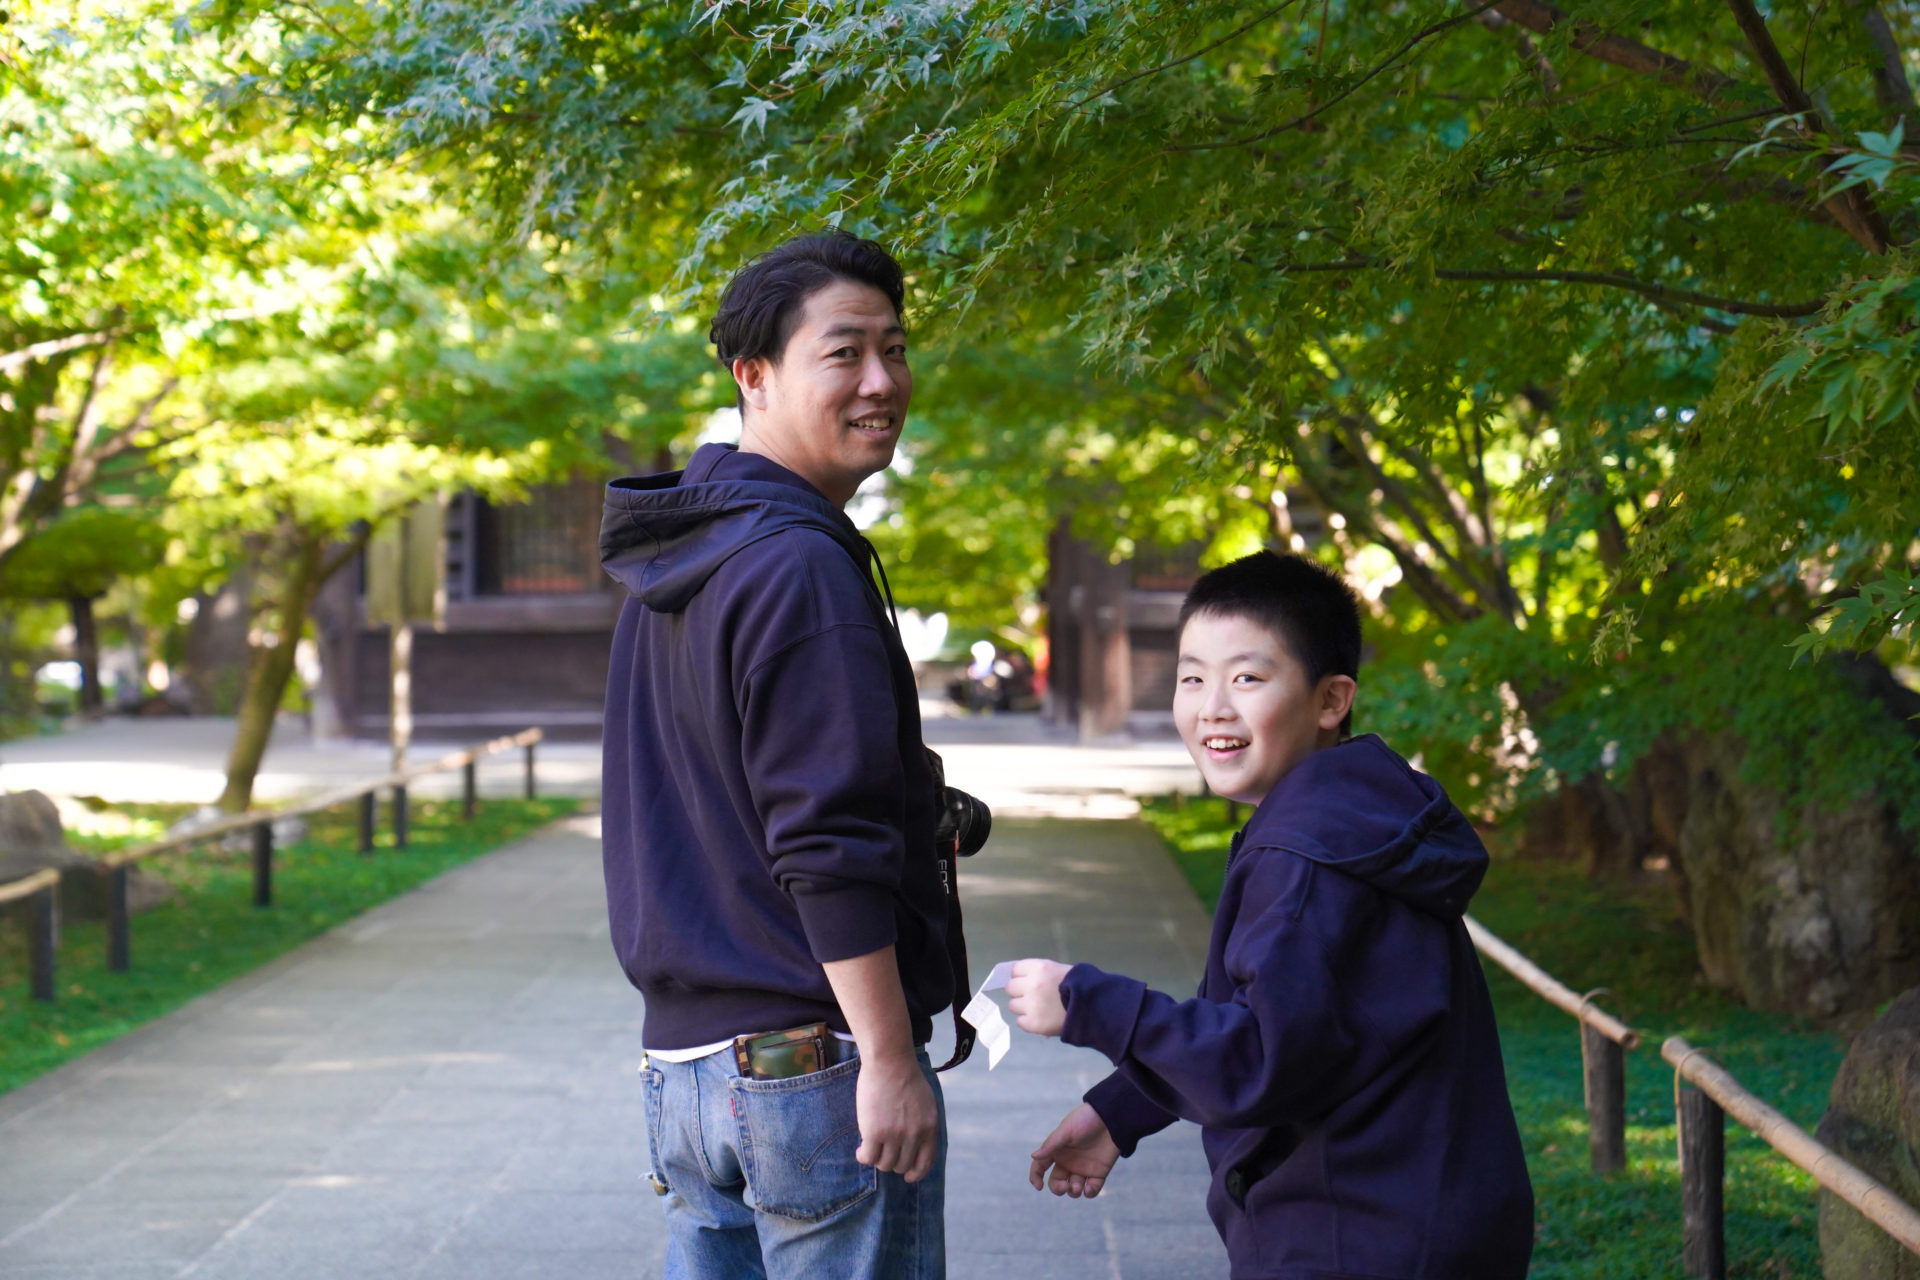 神社の境内を歩くペアルックのパパと男の子が、笑顔でこちらを振り返っています